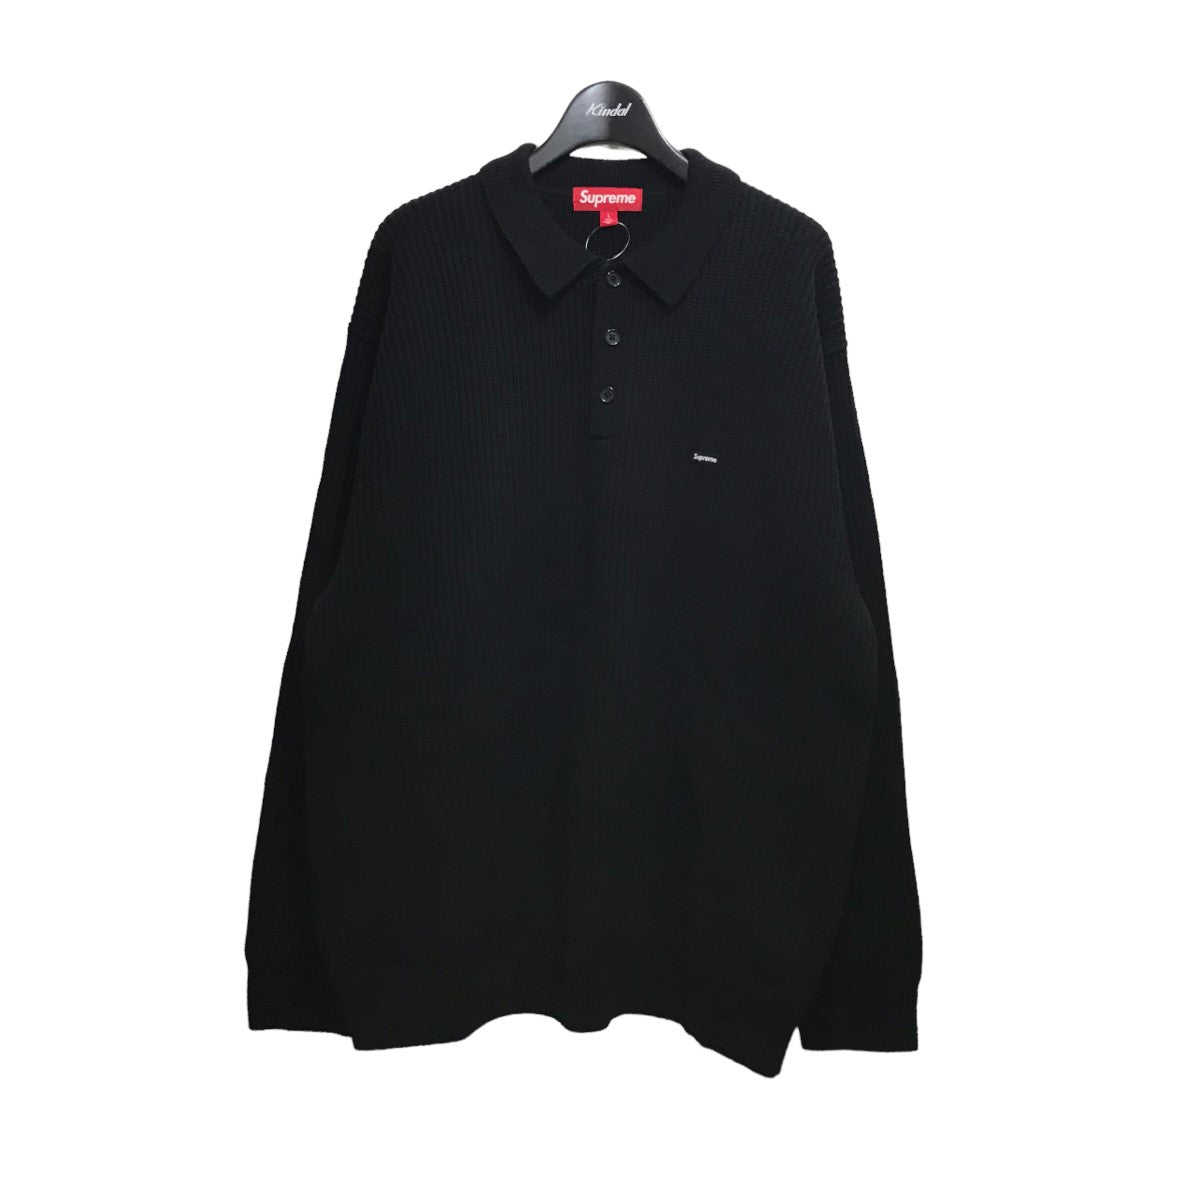 BlackSupreme Small Box Polo Sweater Mサイズ ブラック